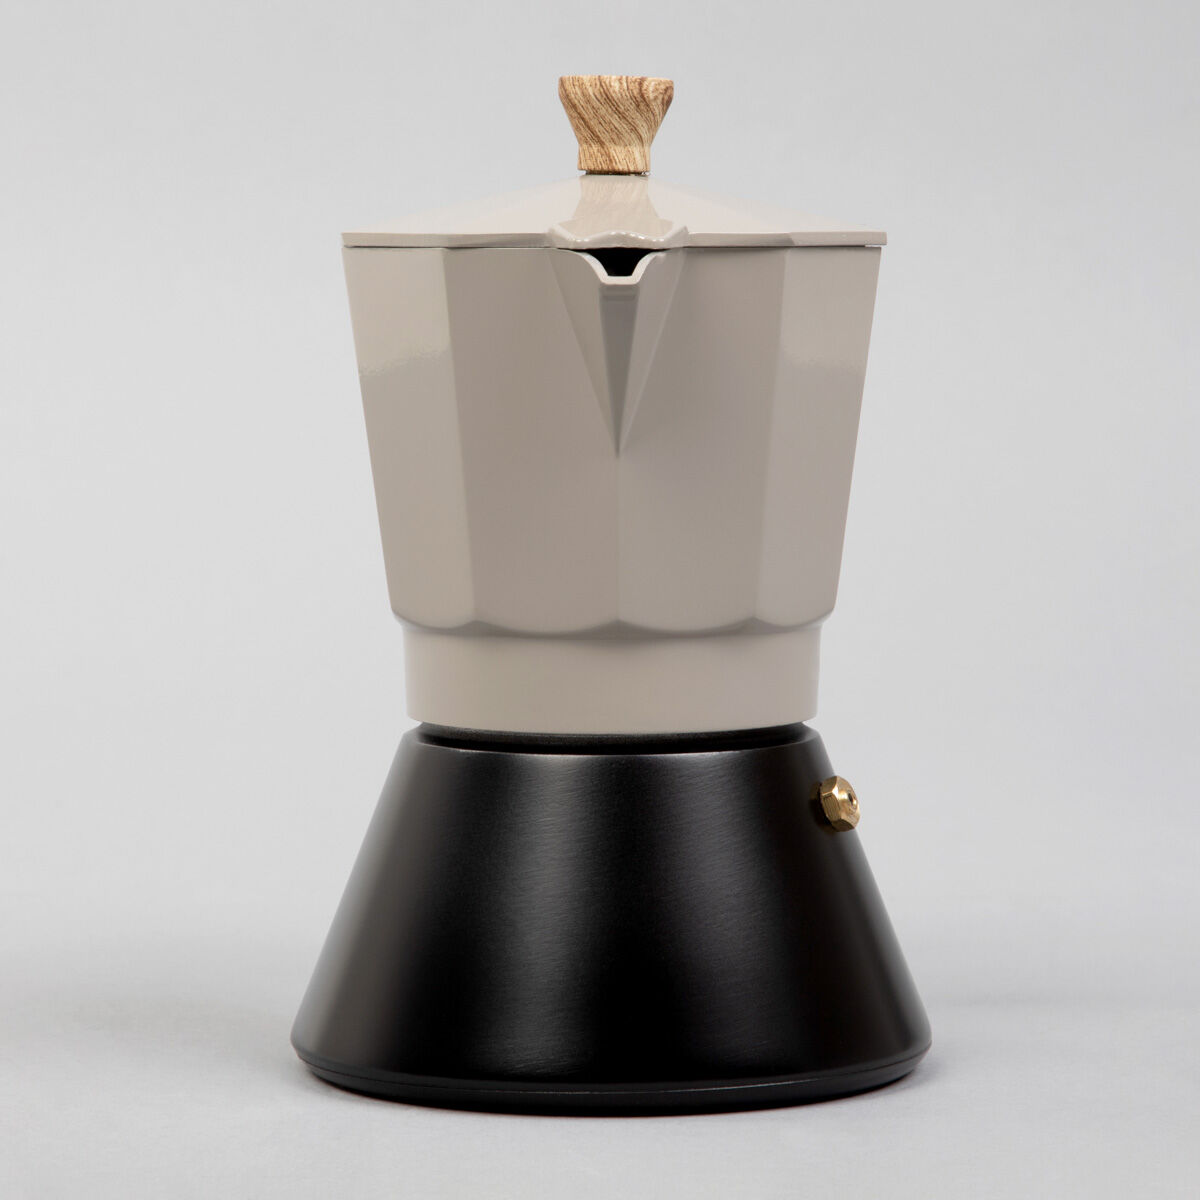 Personalizowana czarno-szara kawiarka 6 cup PREZENT NA DZIEŃ OJCA